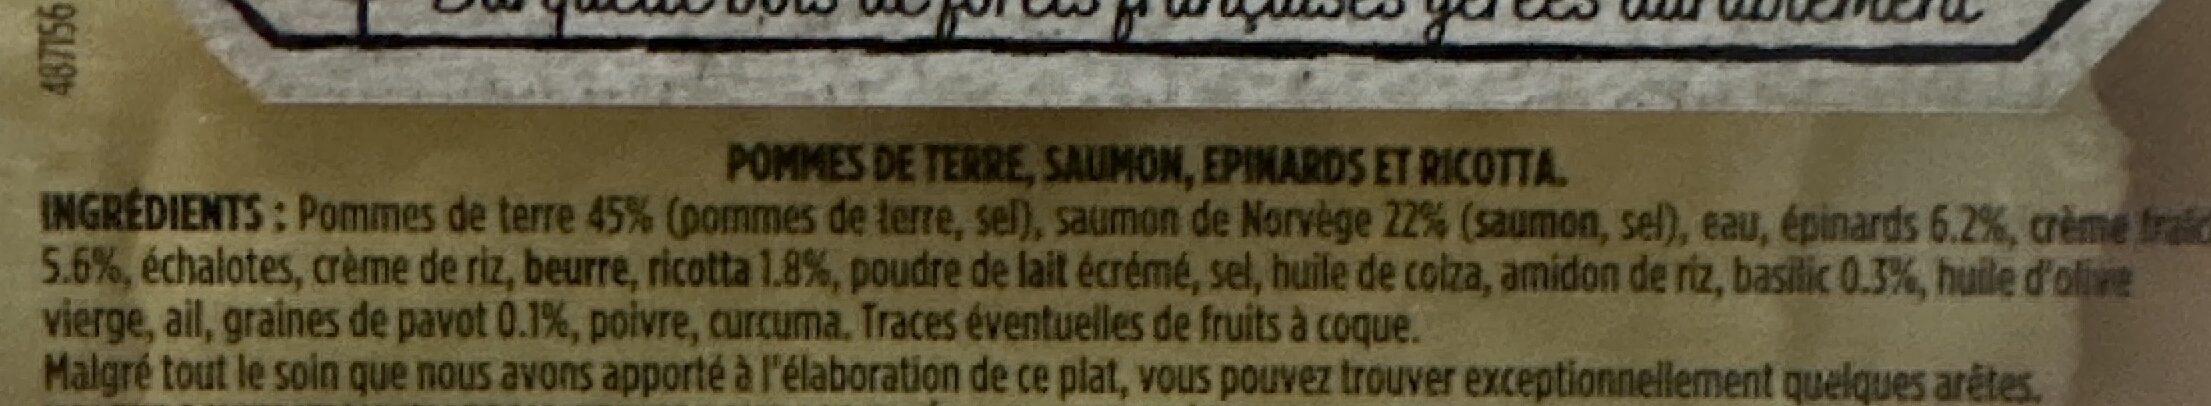 Pavé de saumon Ecrasé de pommes de terre et crème ricotta épinard - Ingrediënten - fr